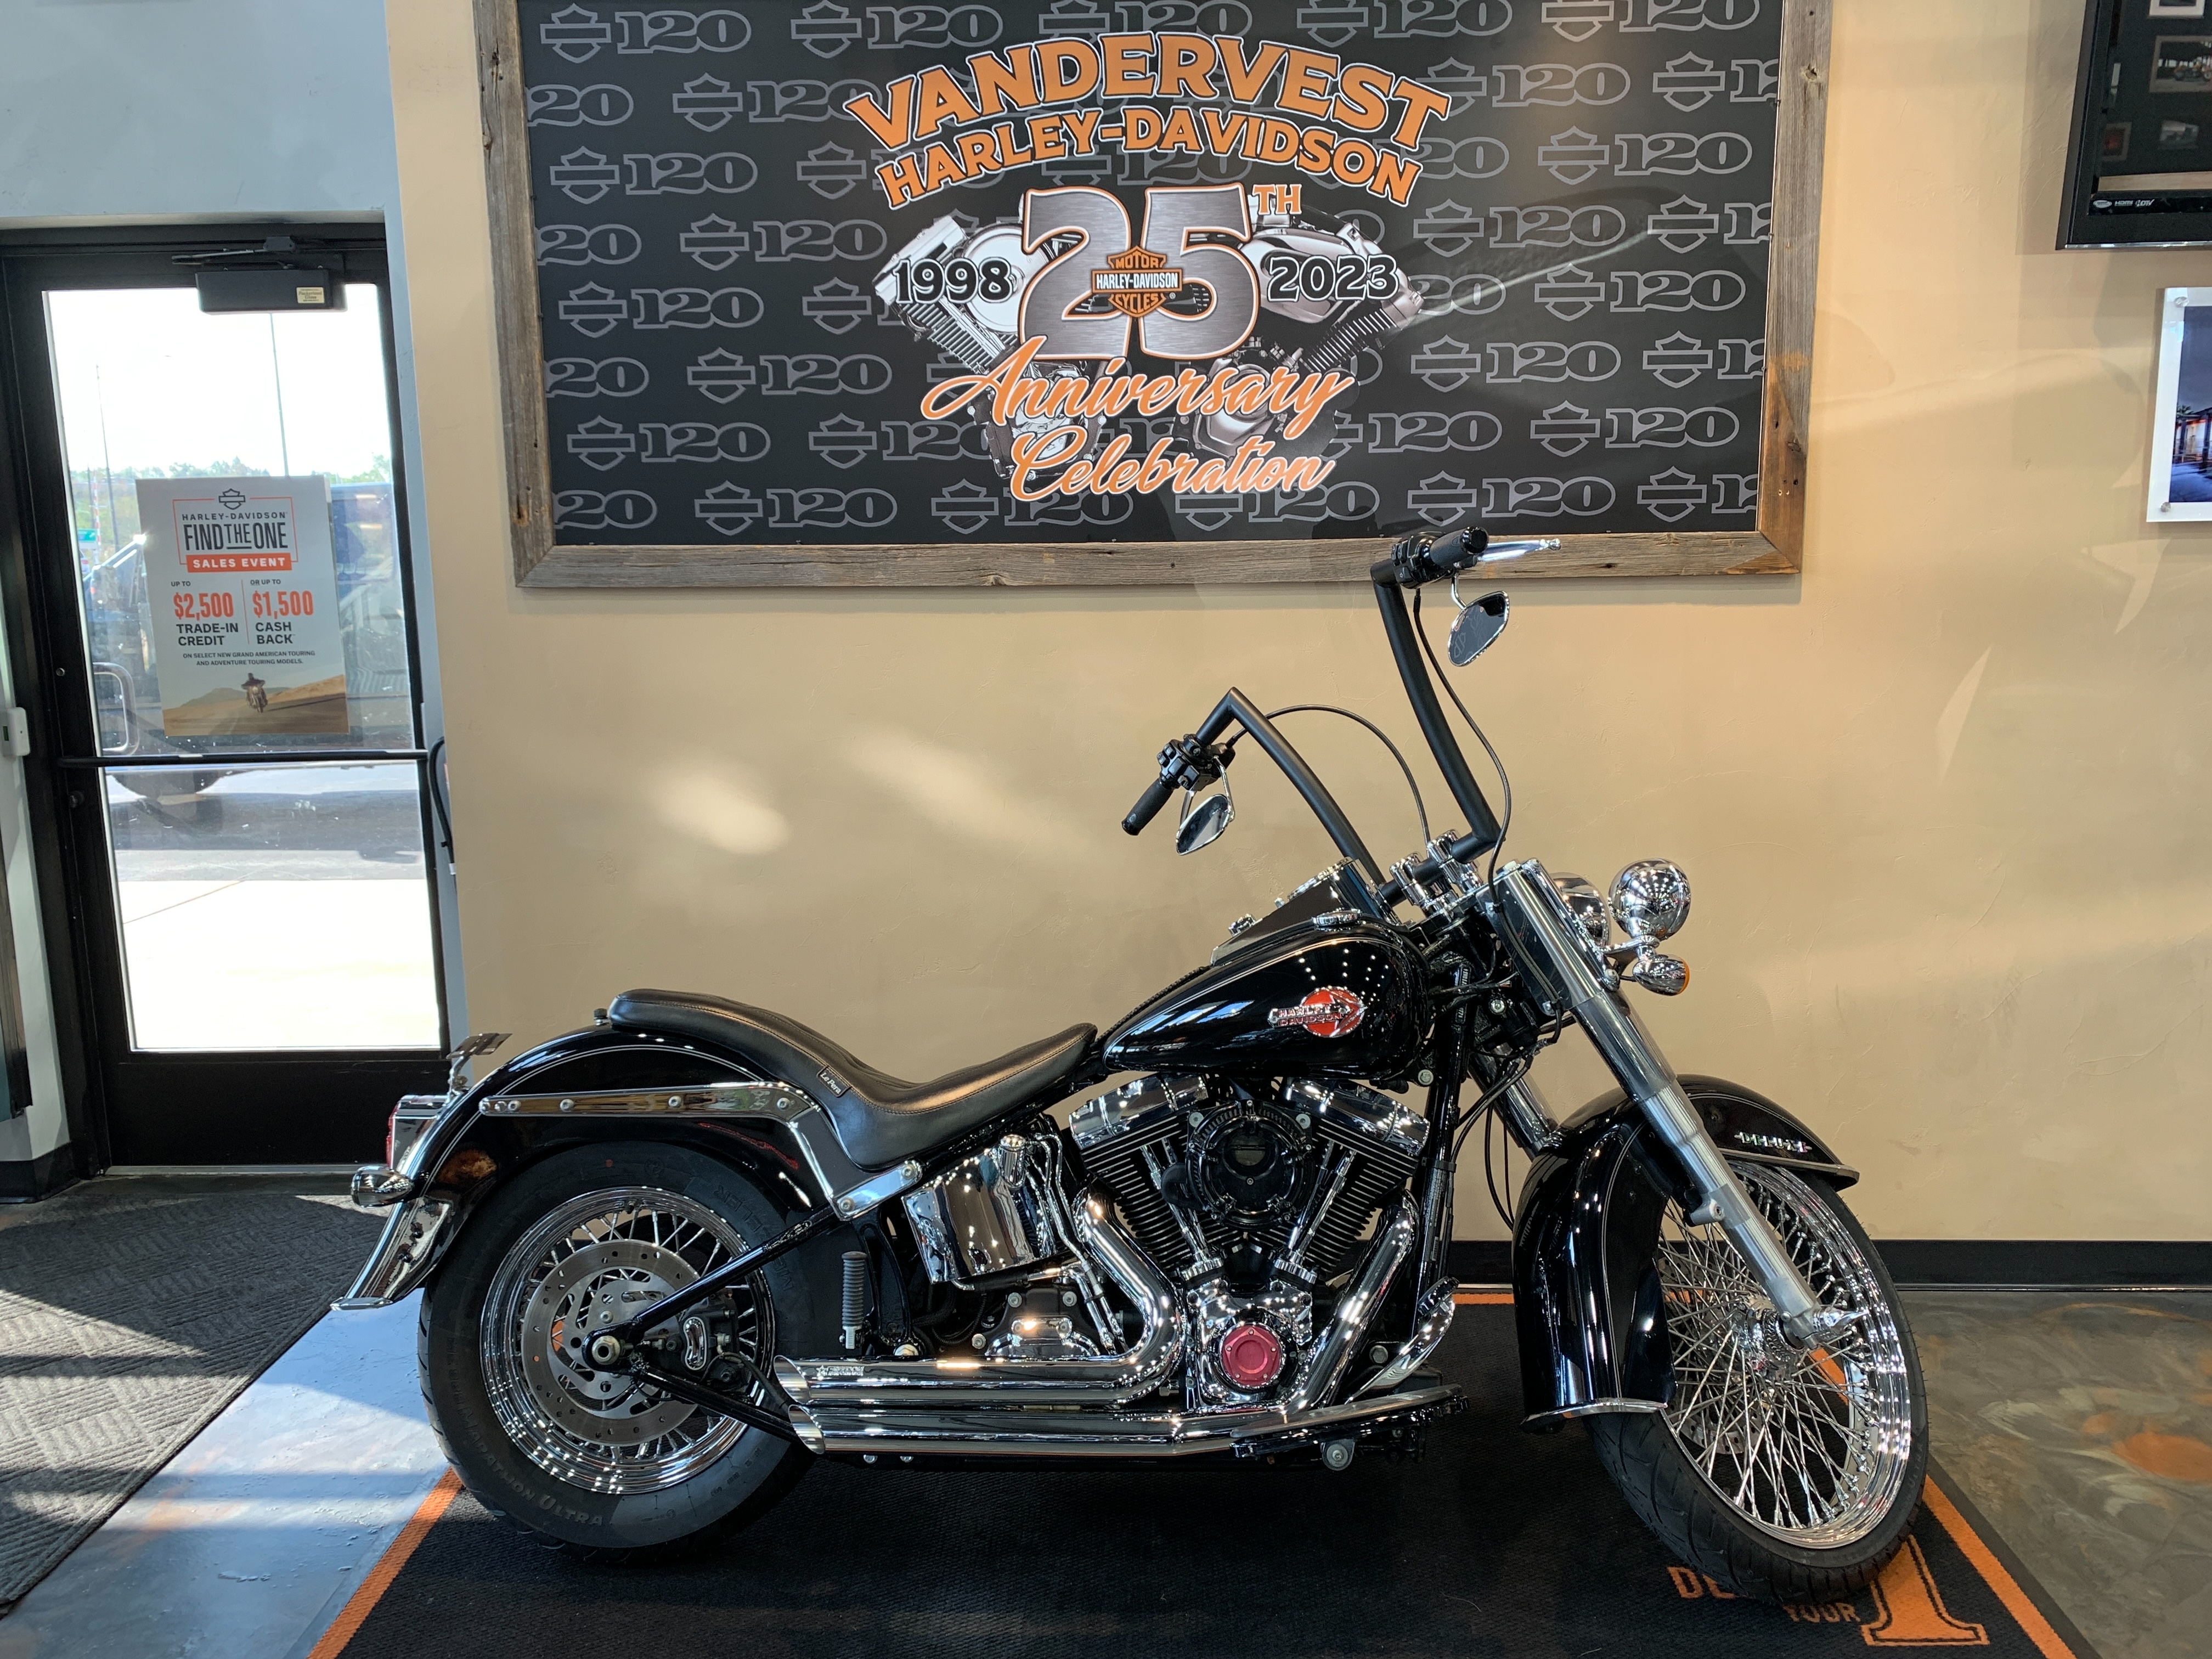 2017 Harley-Davidson Softail Deluxe at Vandervest Harley-Davidson, Green Bay, WI 54303